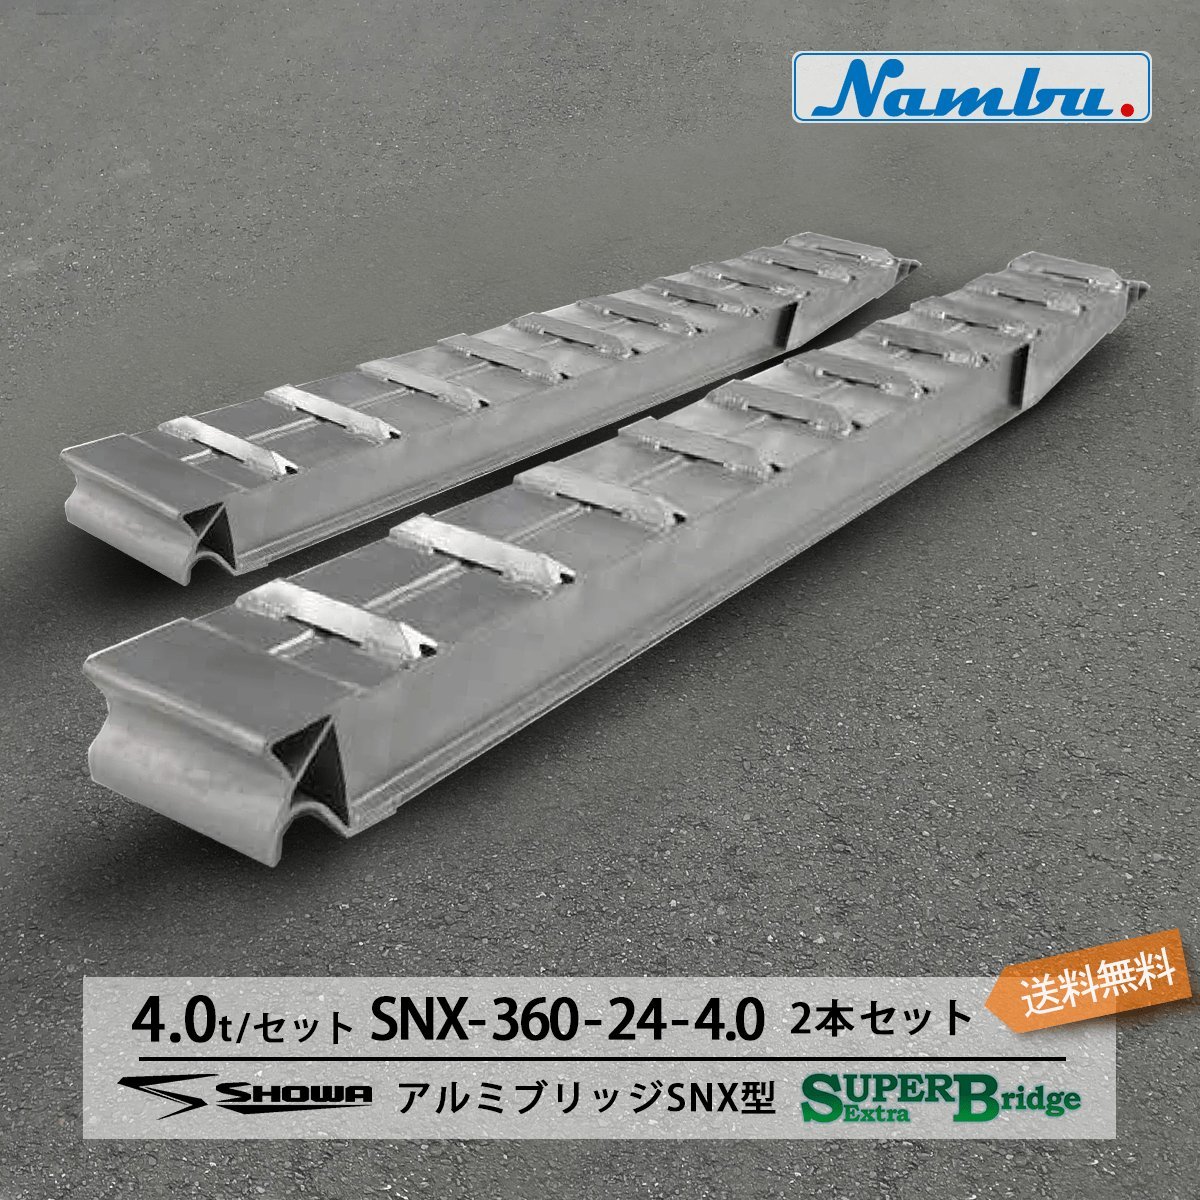 昭和アルミブリッジ SXN-360-24-4.0 4.0t(4t) ツメ式 全長3600/有効幅240(mm) 2本 組